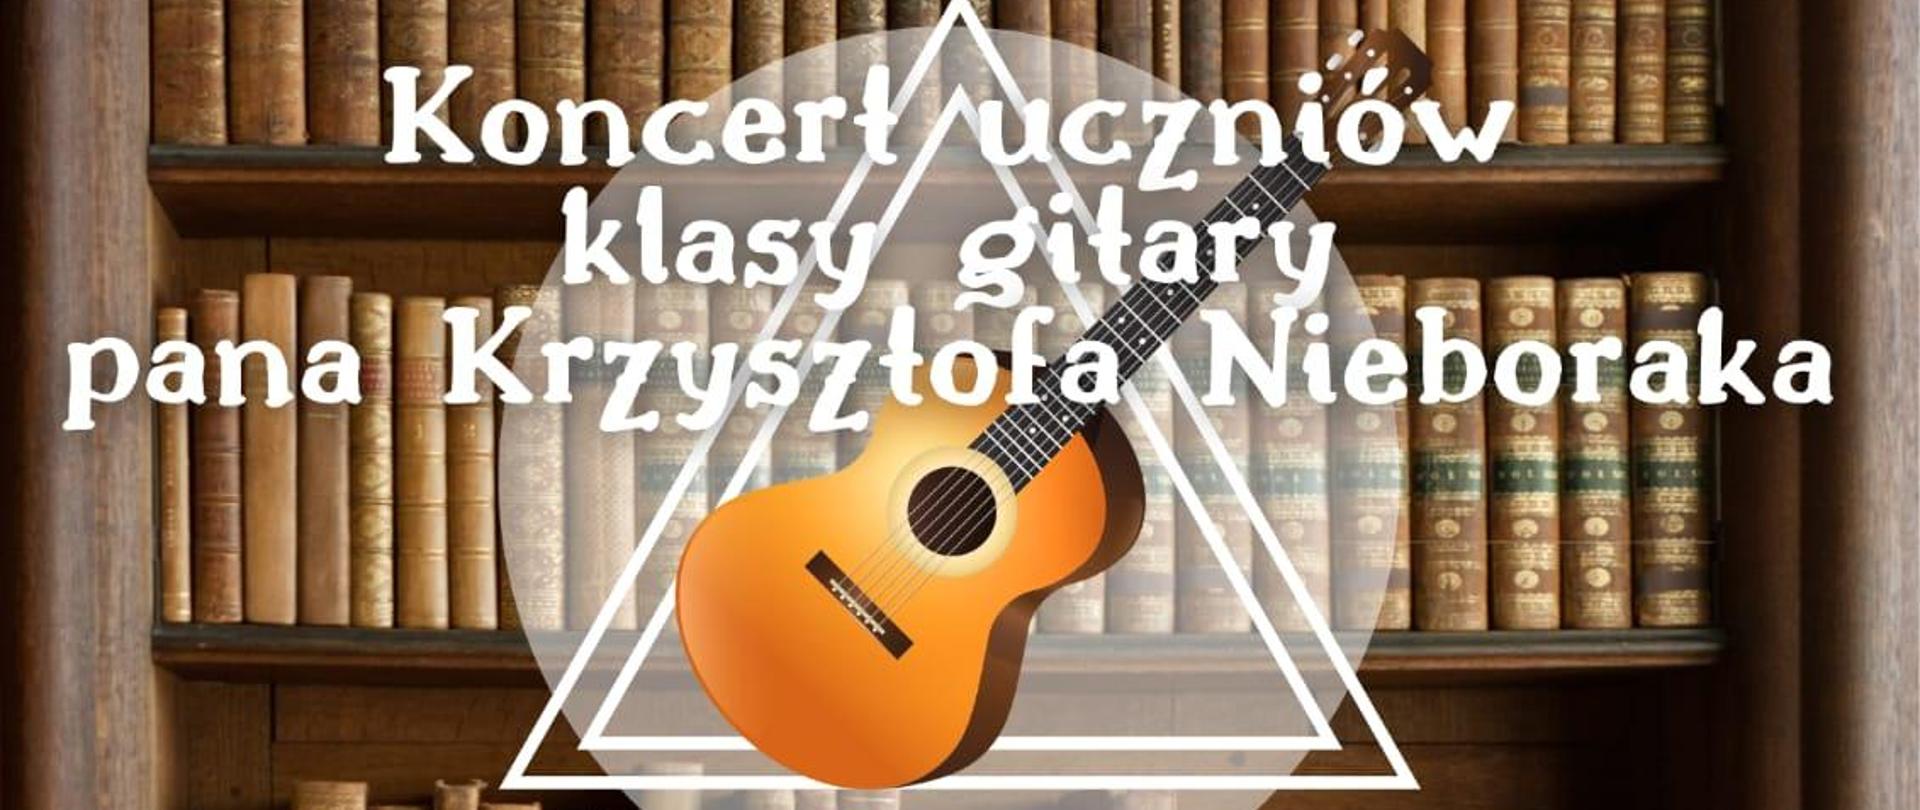 Koncert klasowy p. Krzysztofa Nieboraka